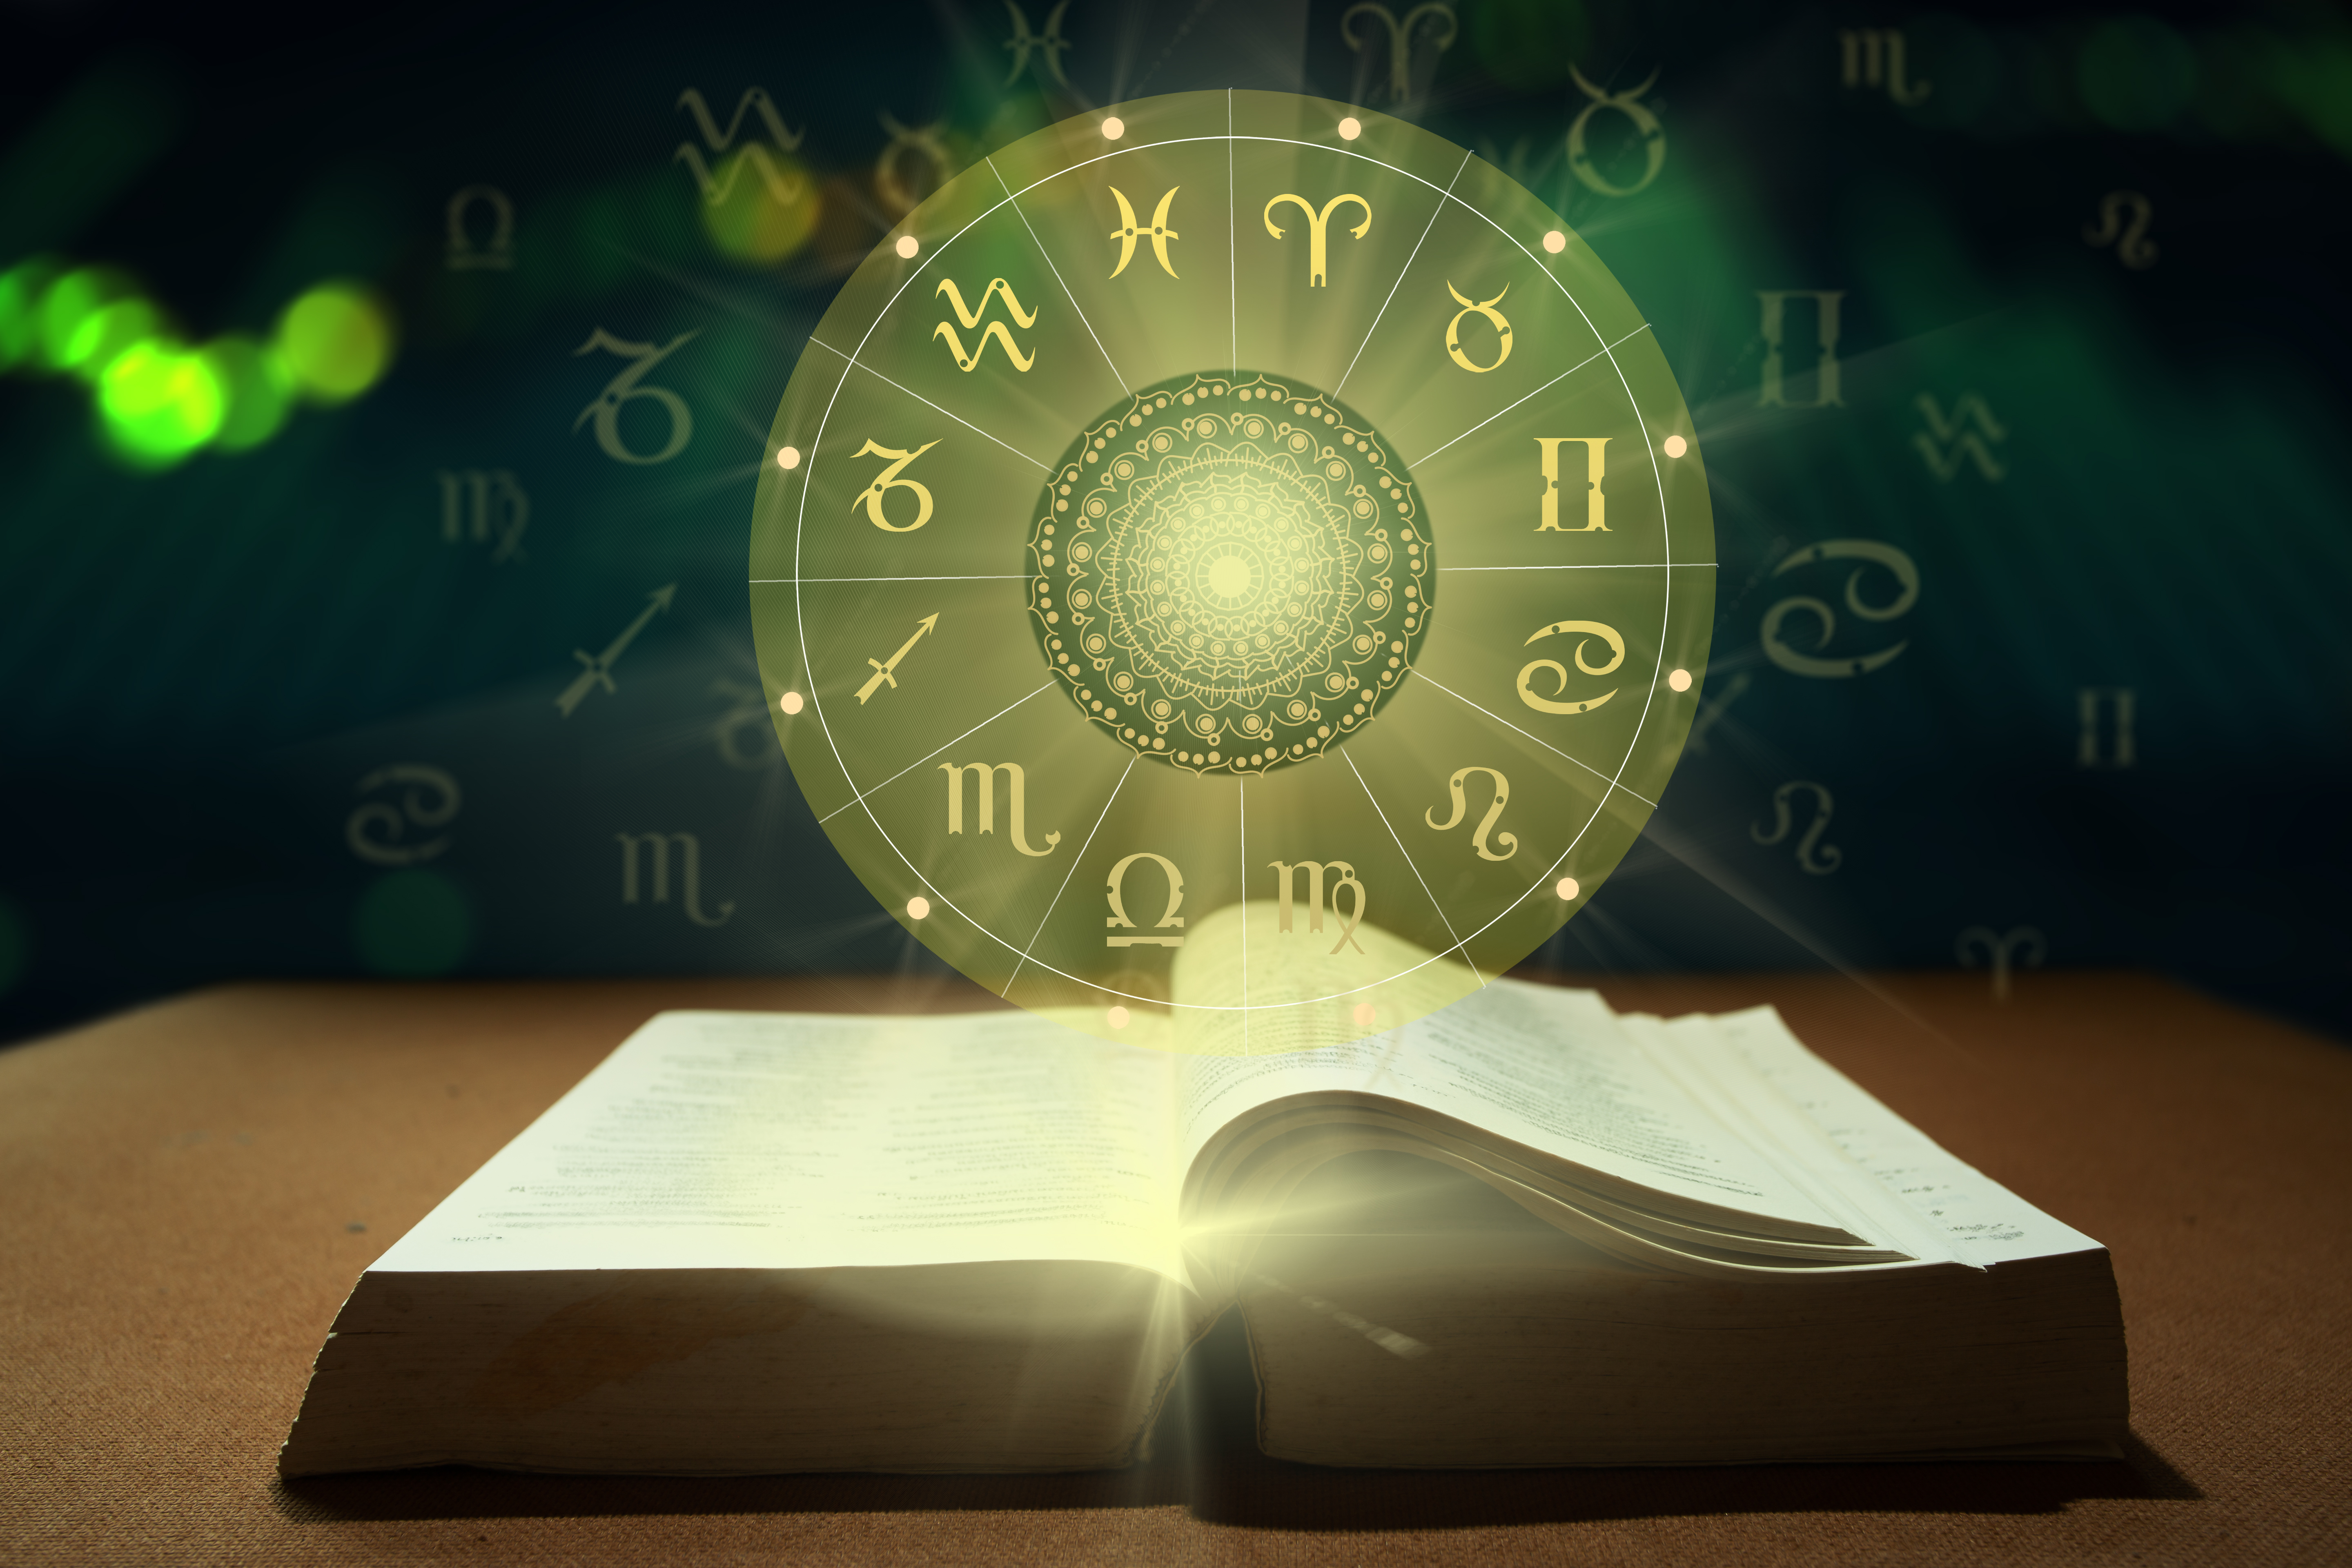 A zodiac wheel next to an open book